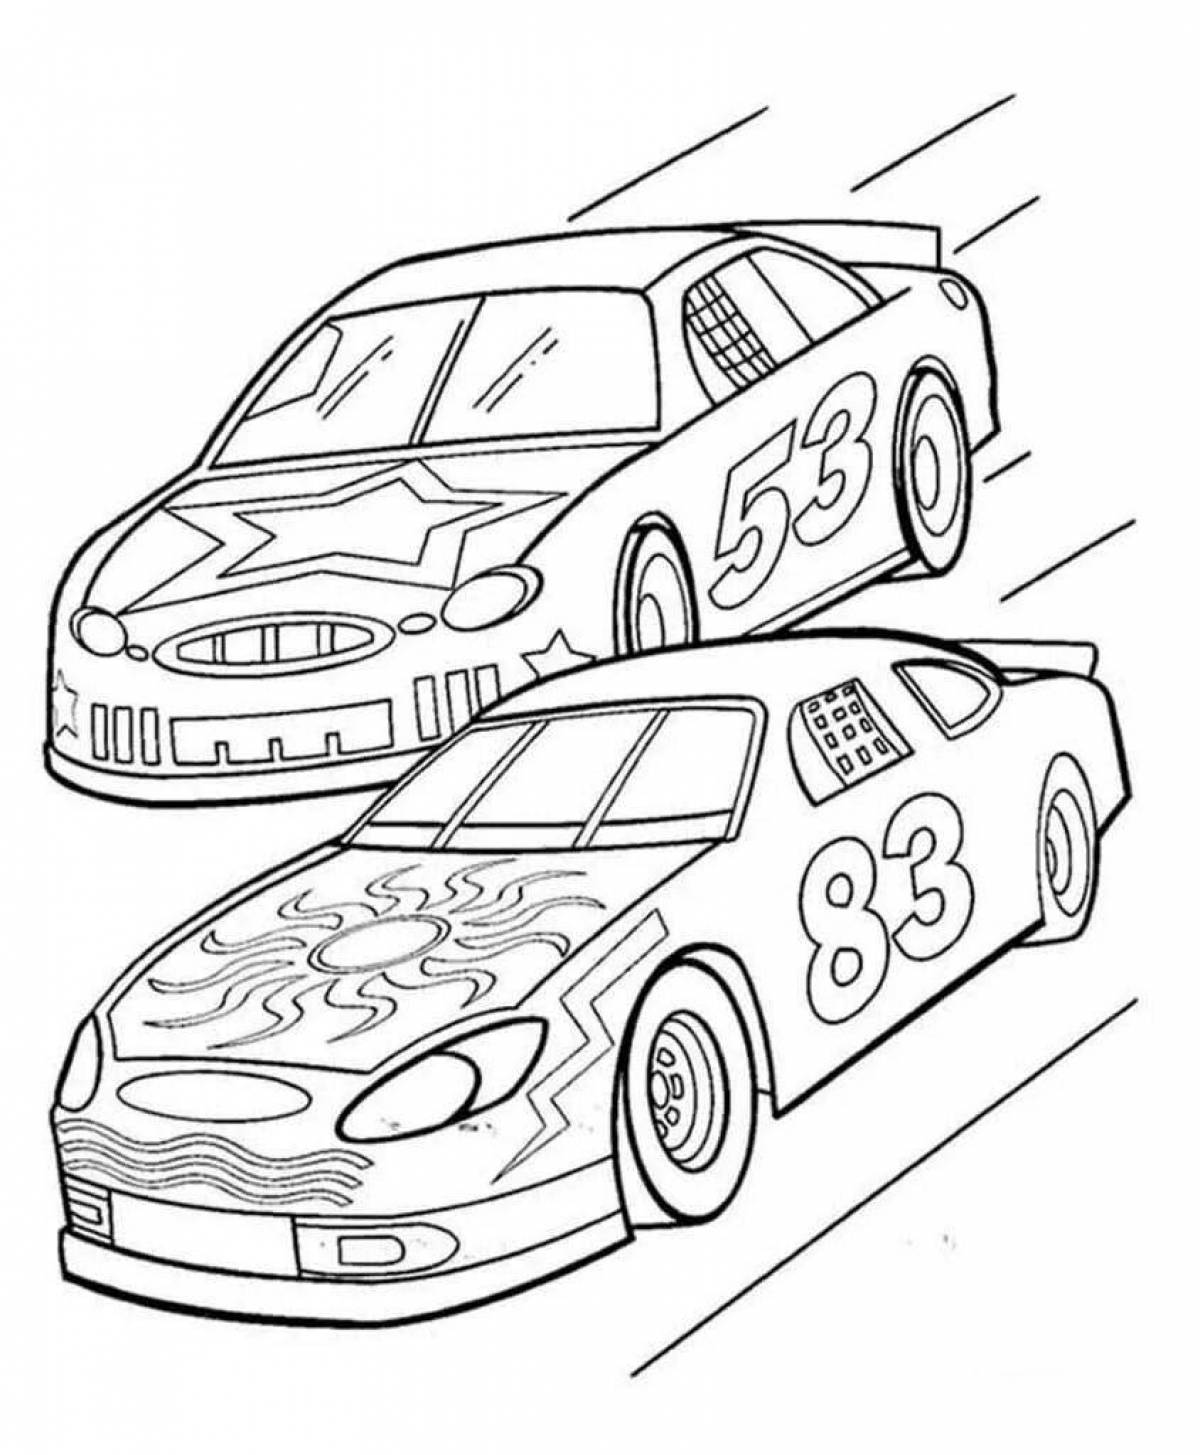 Раскраска гоночного автомобиля с замысловатыми оттенками